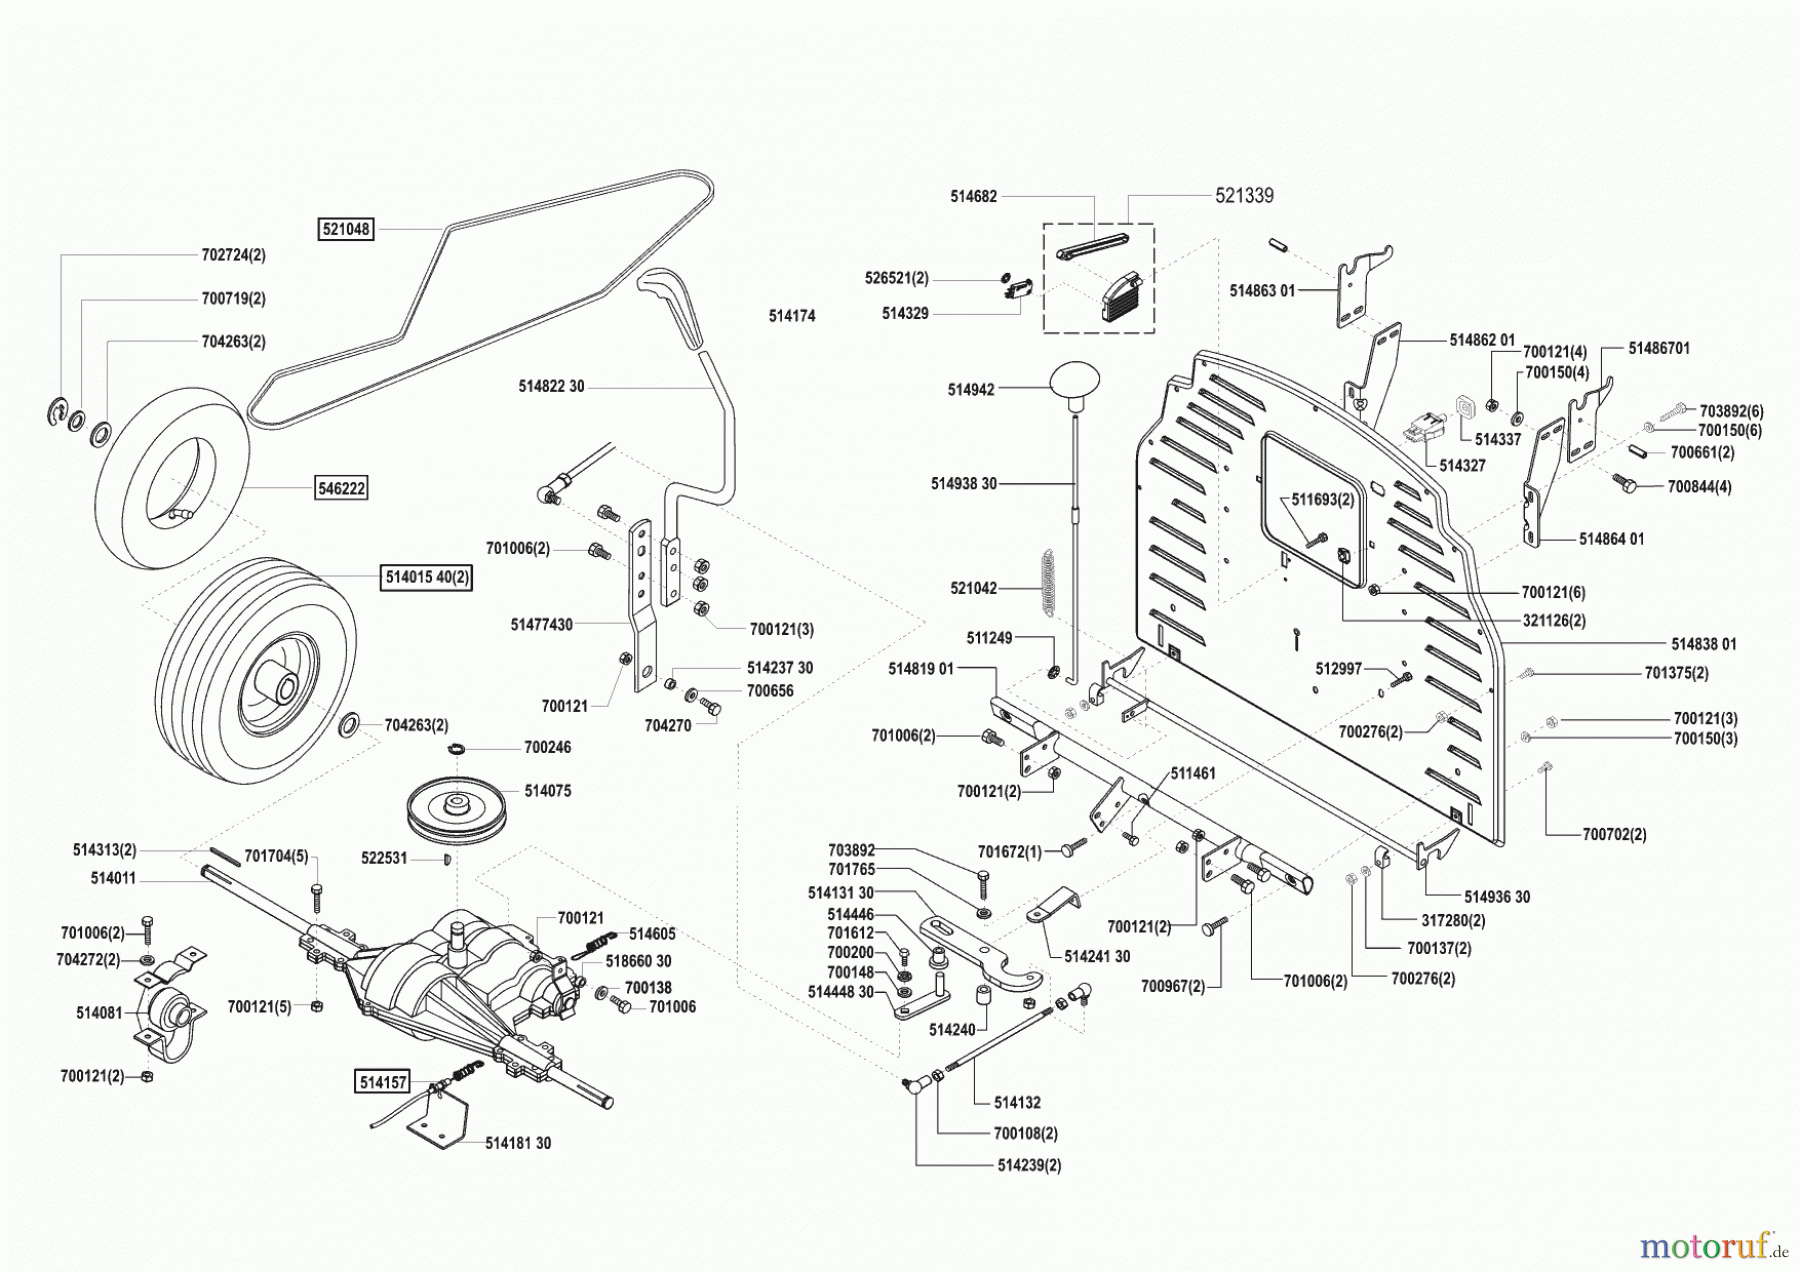  Concord Gartentechnik Rasentraktor T15-102 vor 04/2002 Seite 3